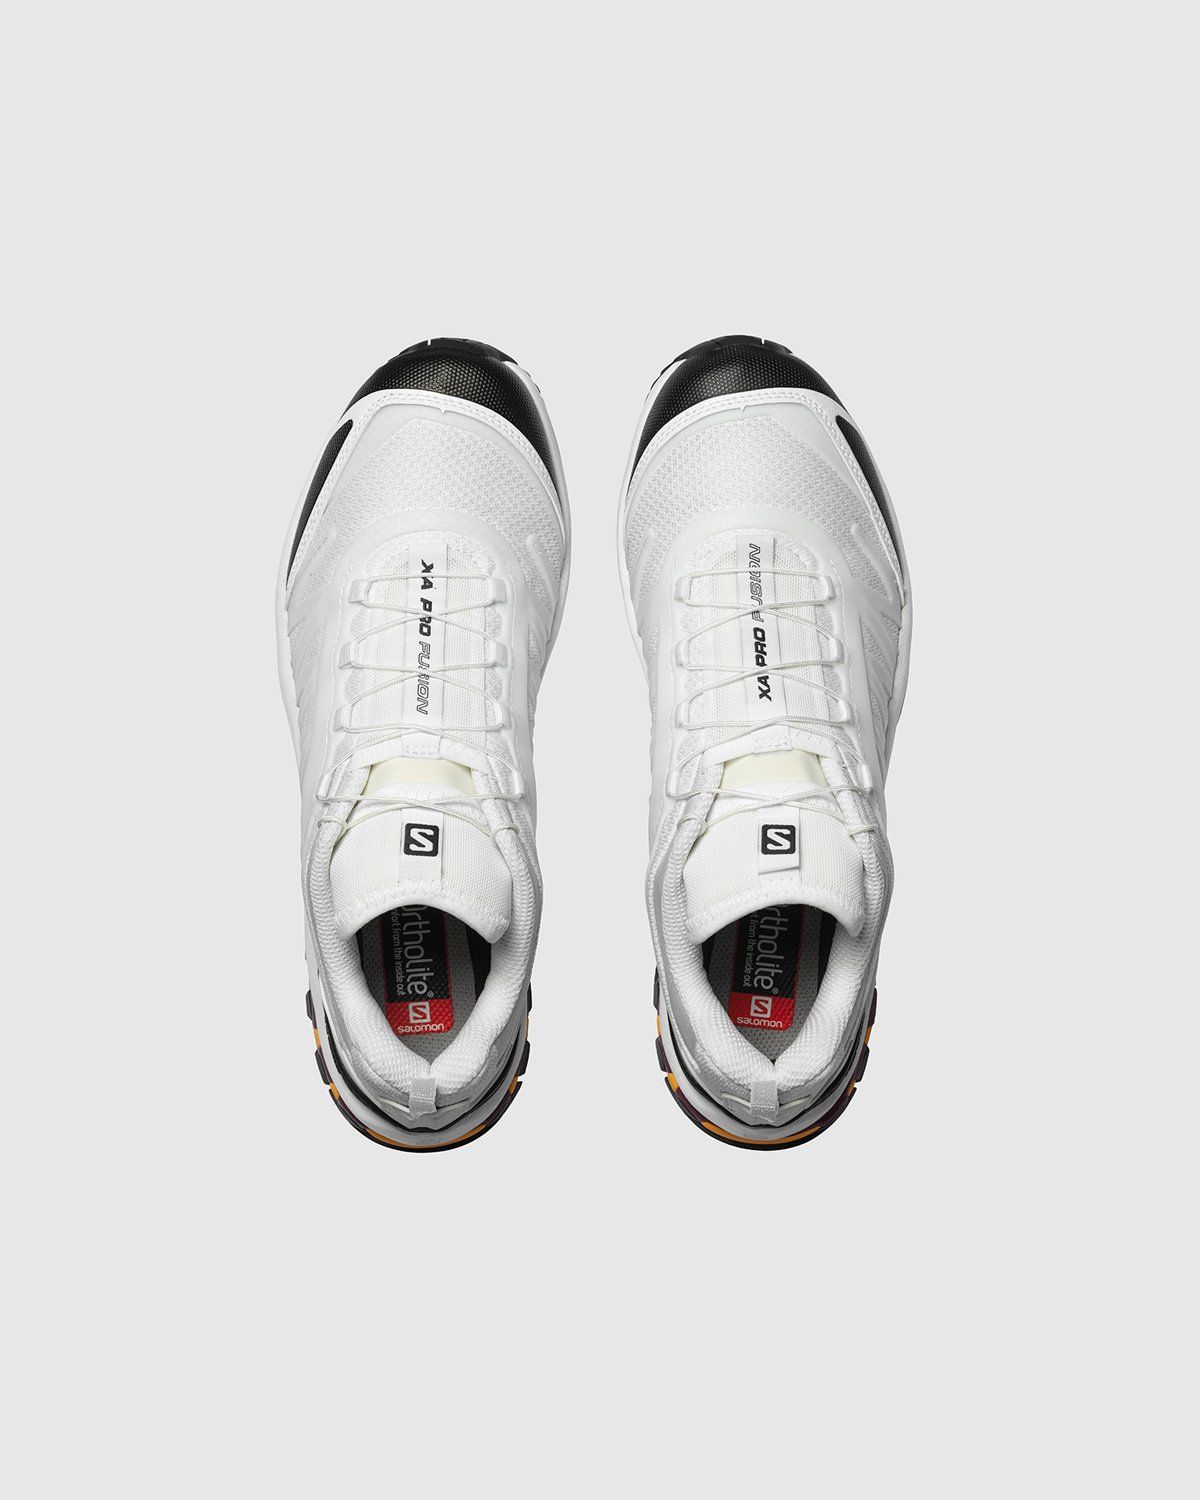 Salomon – XA-PRO FUSION ADVANCED White/Black/Plum Caspia - Low Top Sneakers - White - Image 3